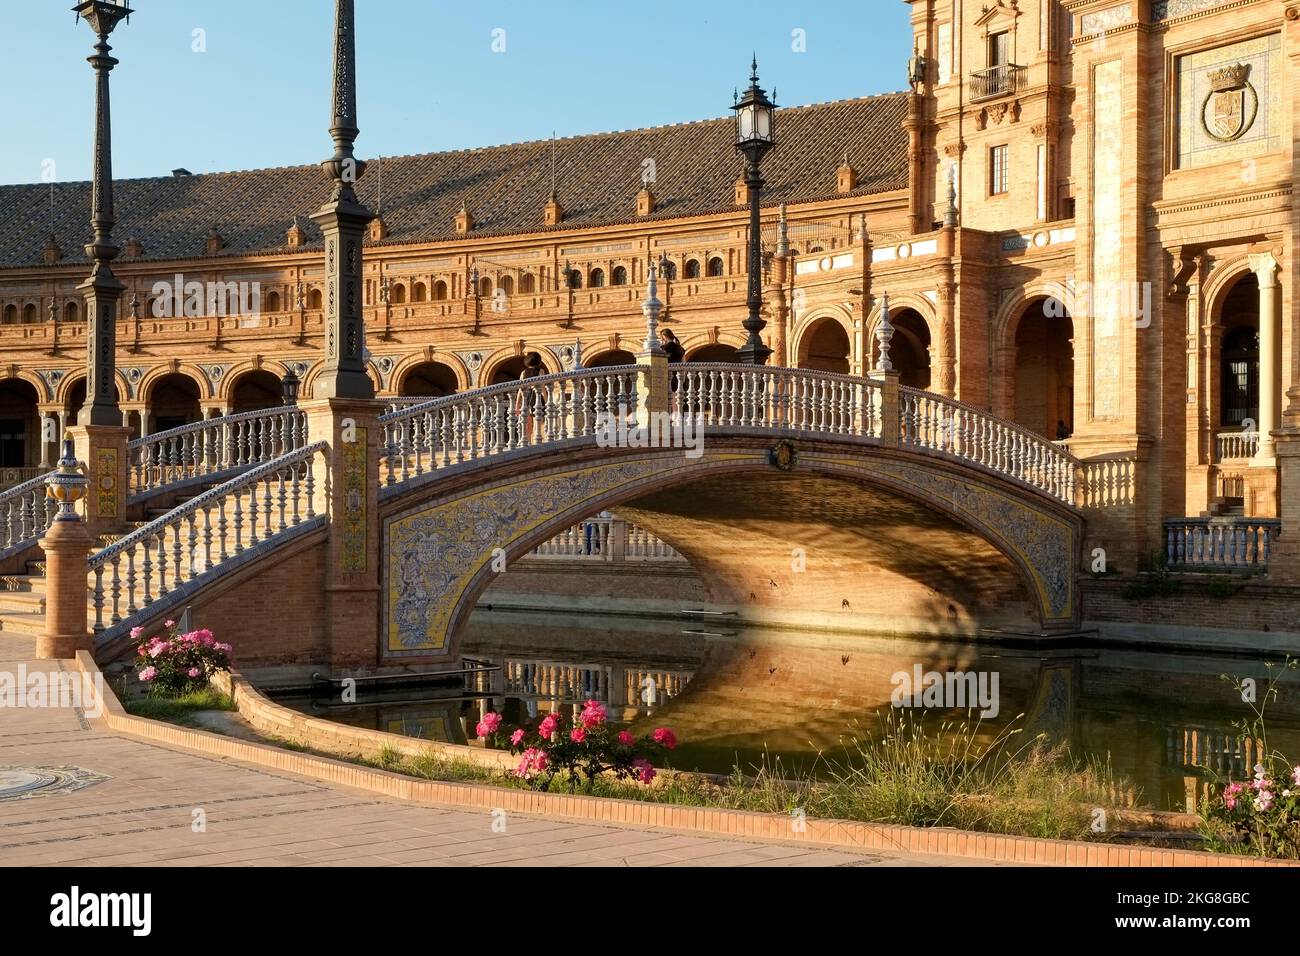 Espagne, Séville, Canal reflétant le pont de l'arche sur la Plaza de Espagna Banque D'Images